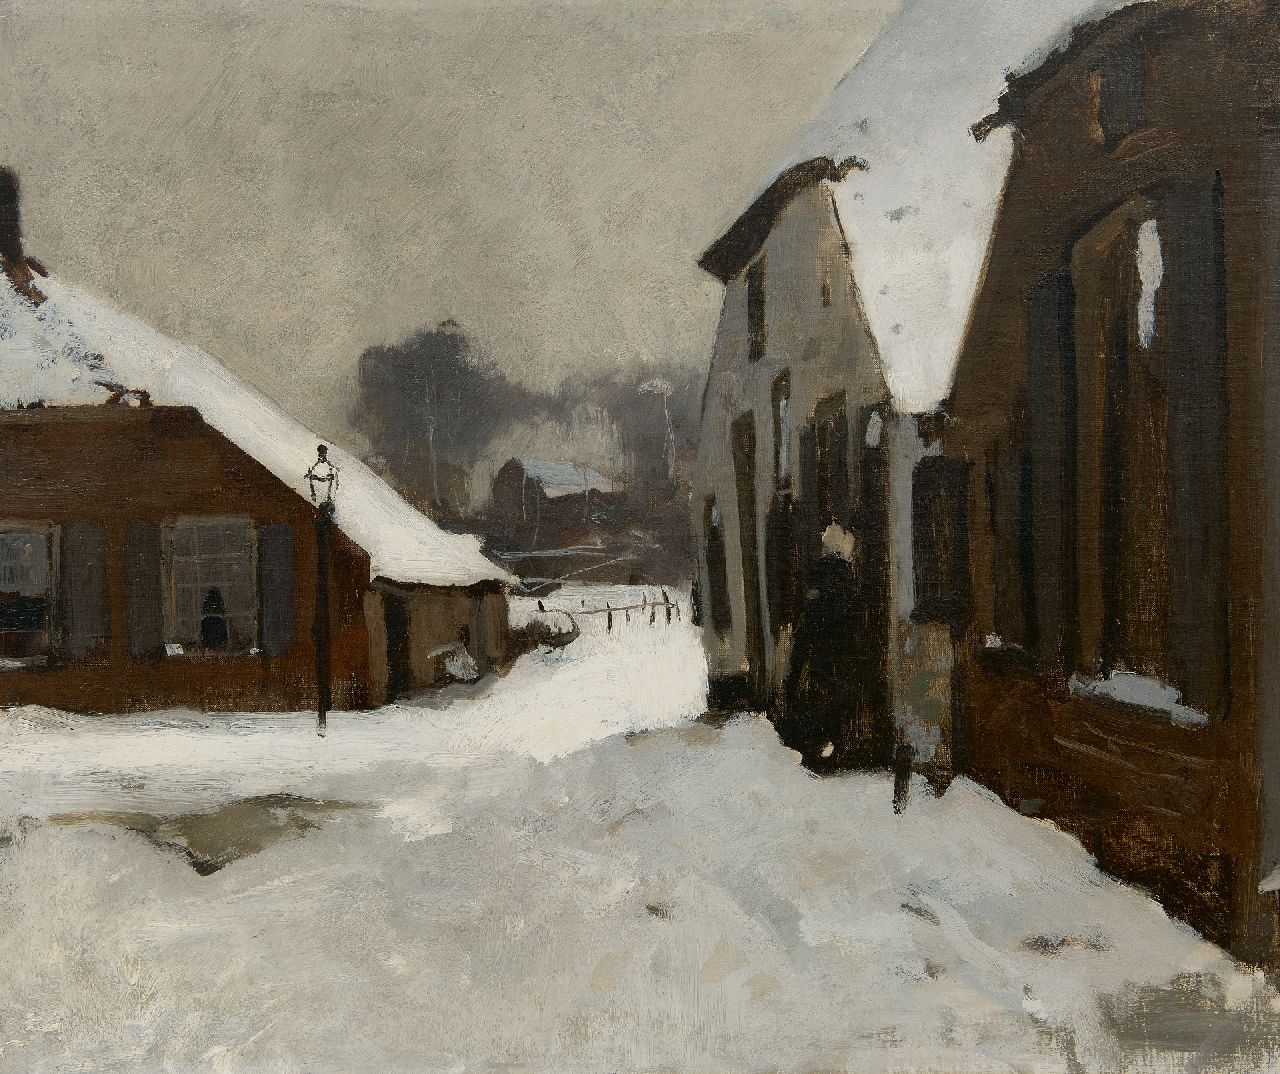 Witsen W.A.  | 'Willem' Arnold Witsen | Gemälde zum Verkauf angeboten | Winter in Ede, oil on canvas 55,2 x 66,5 cm, zu datieren um 1895-1902